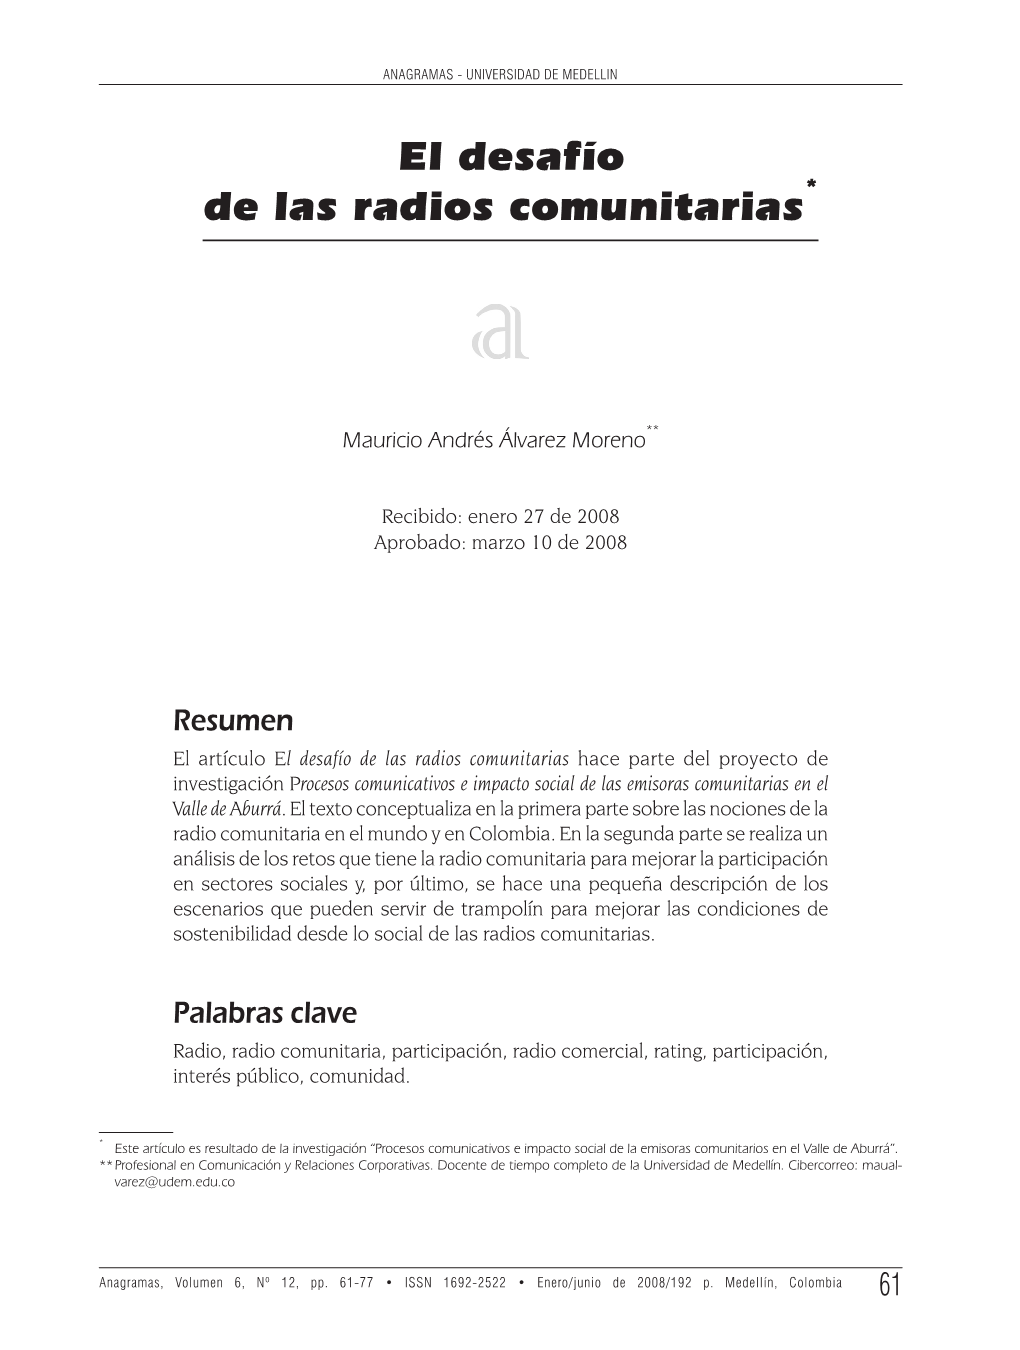 El Desafío De Las Radios Comunitarias*